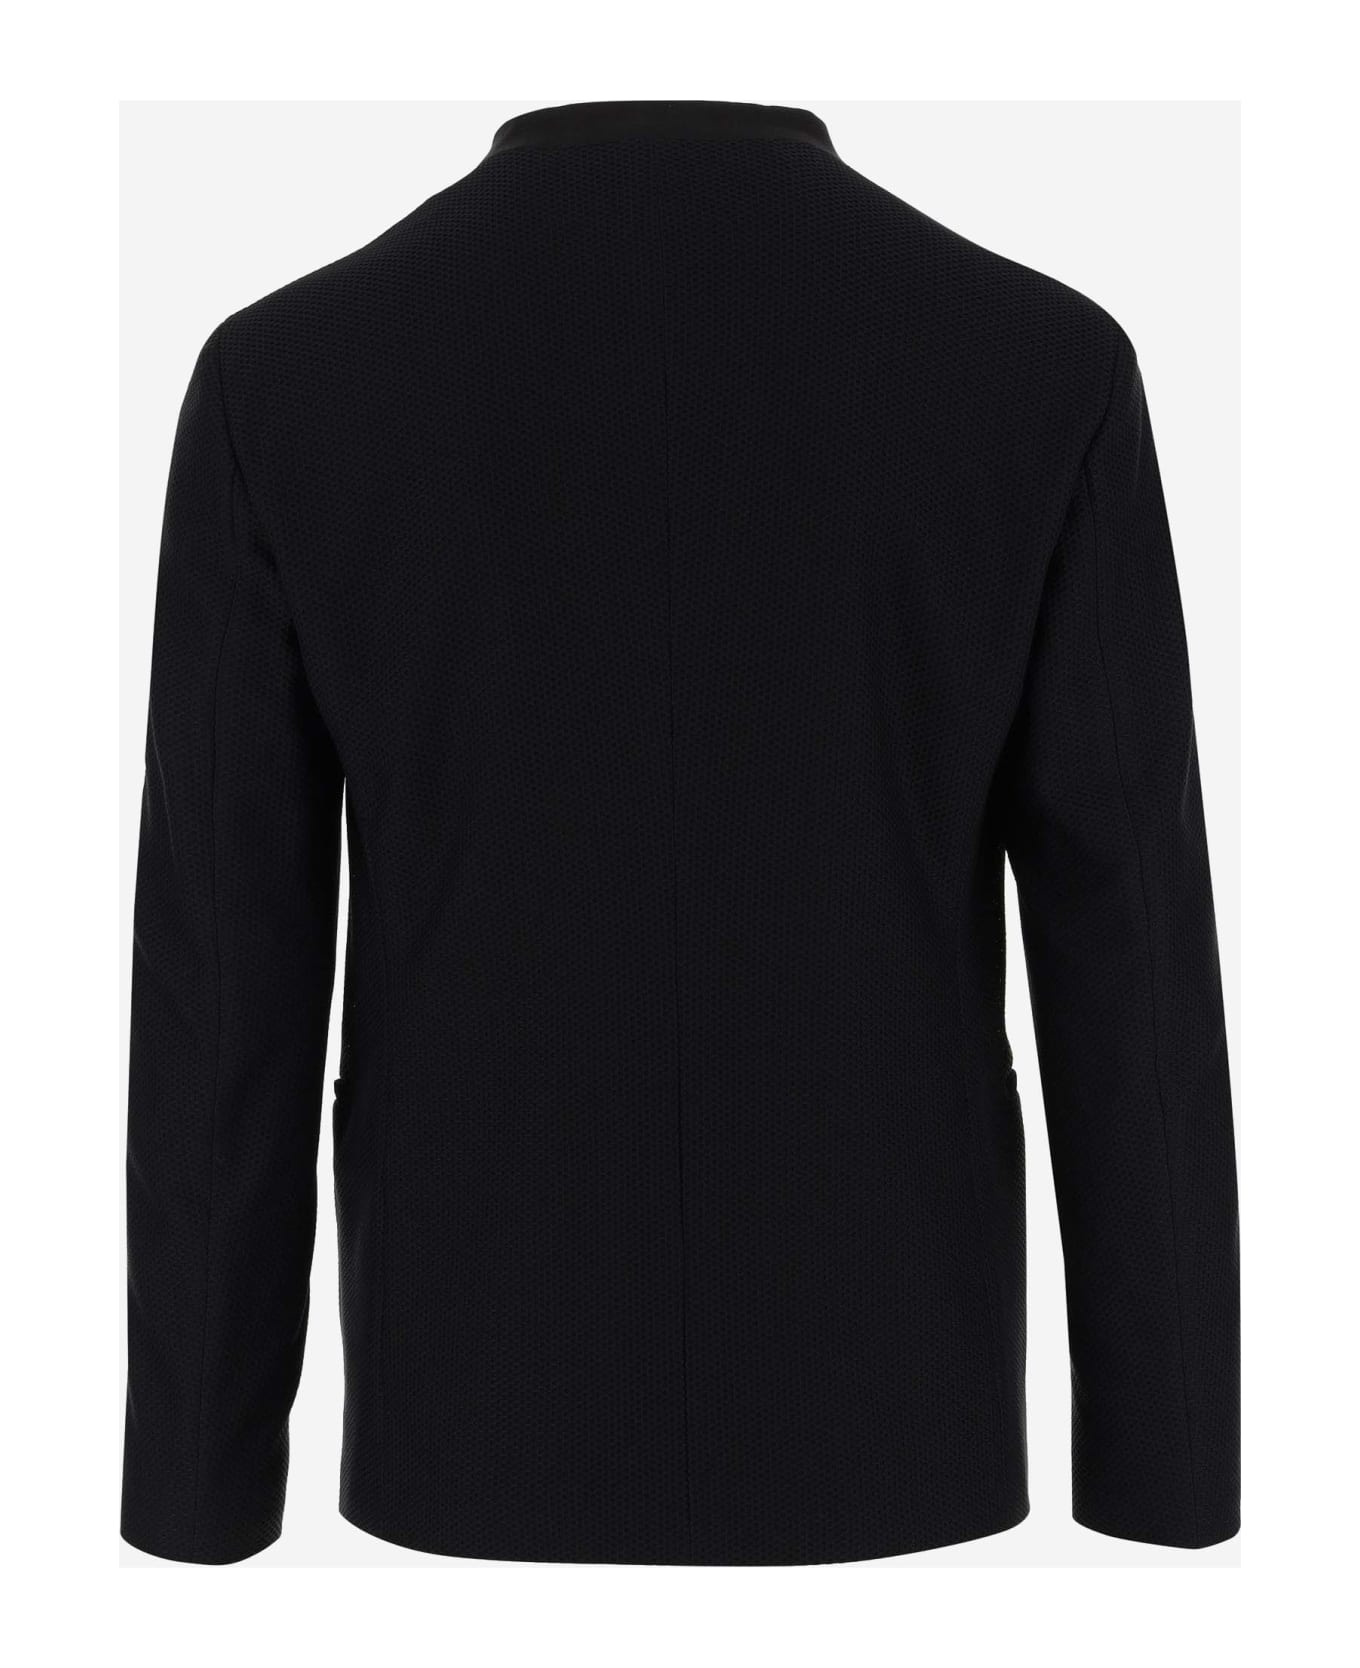 Giorgio Armani Stretch Jersey Jacket - Black